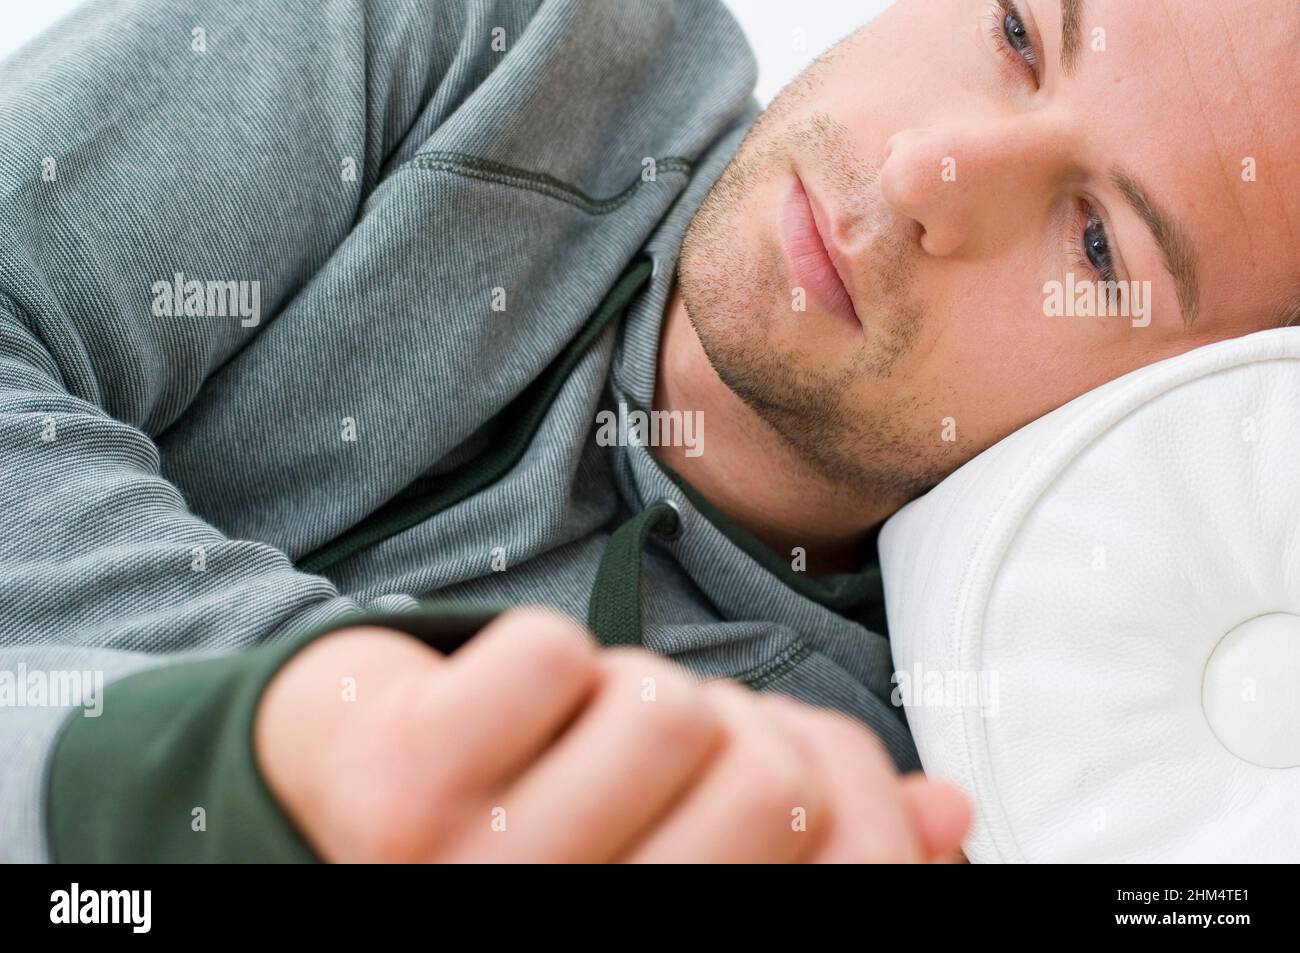 Nahaufnahme eines jungen Mannes, der auf dem Bett liegt und denkt, Credit:Photoshot Creative / Stuart Cox / Avalon Stockfoto